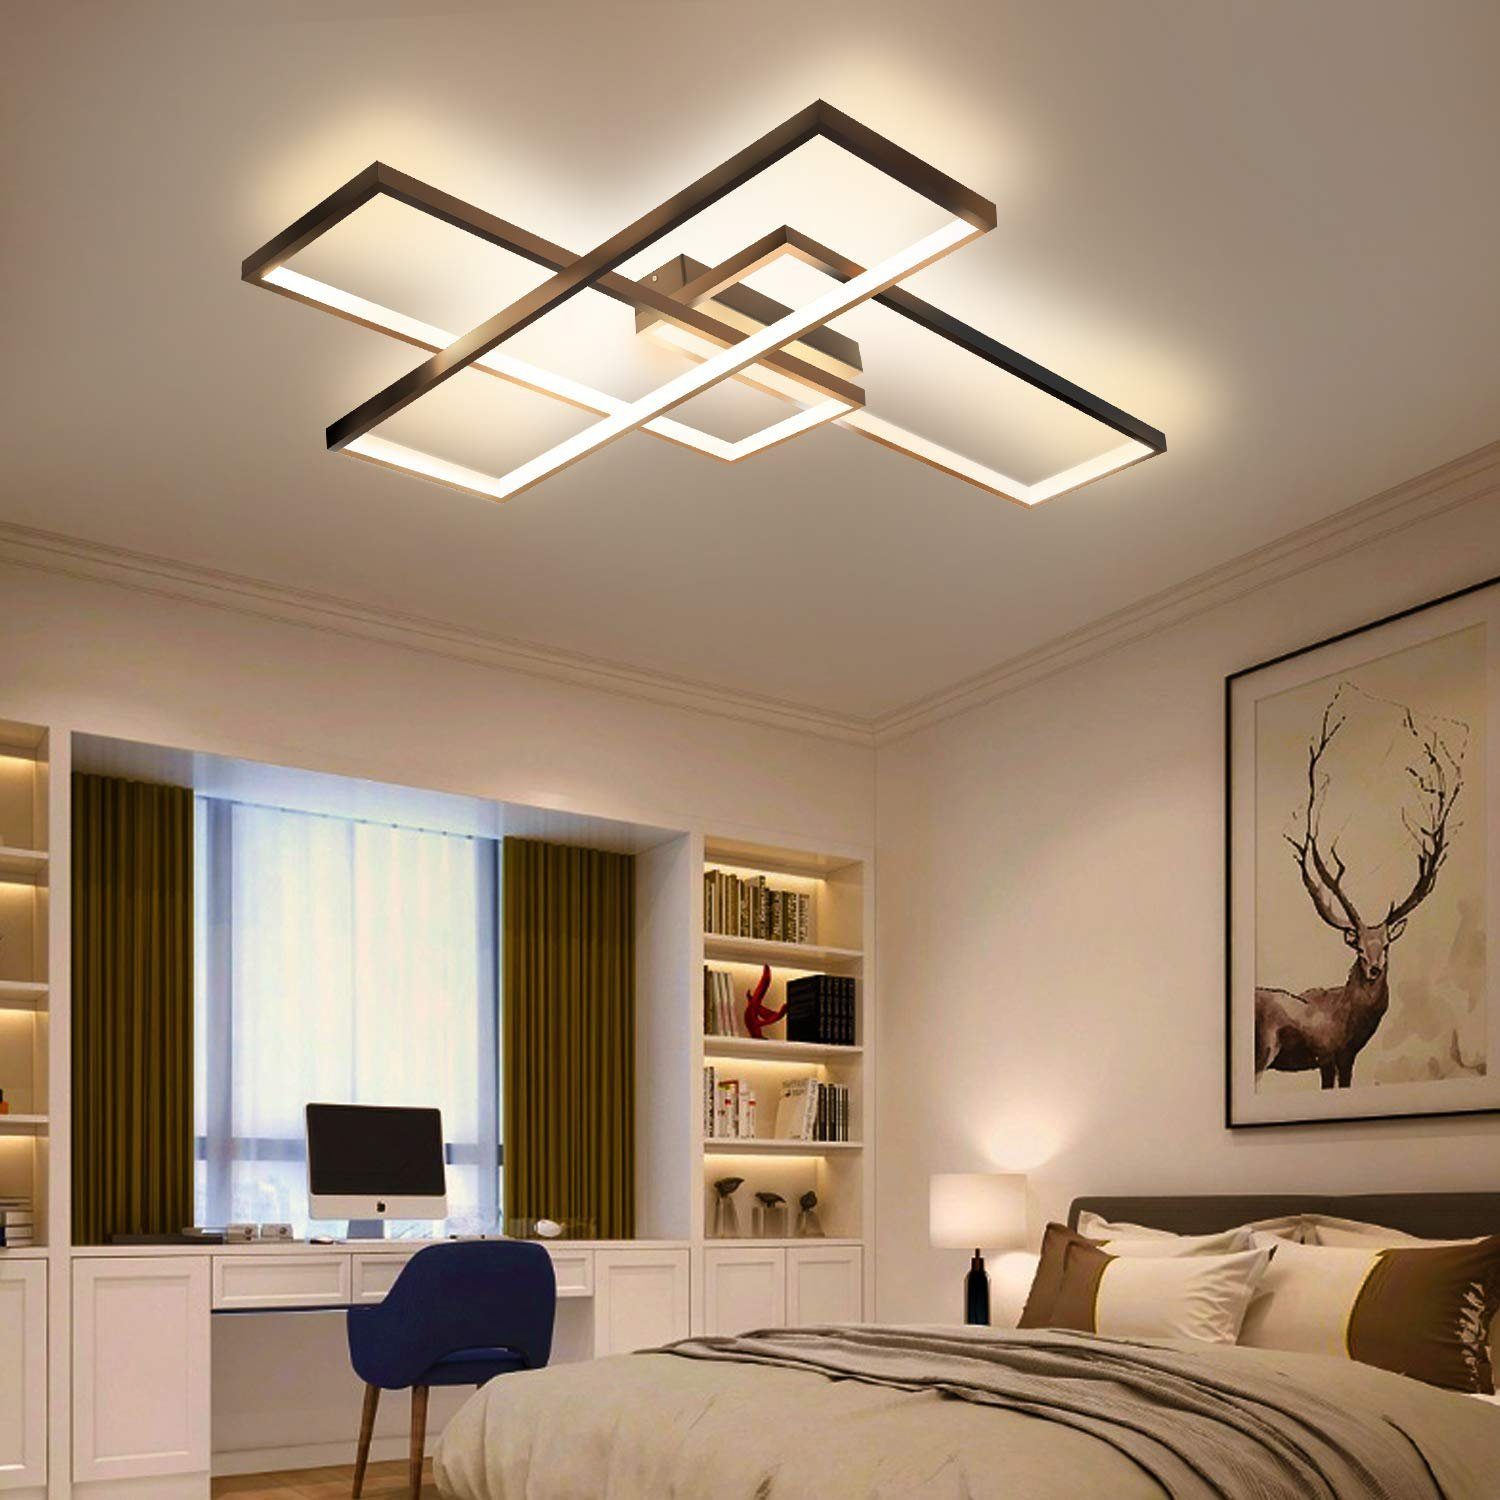 Design LED Deckenleuchte Flur Dielen Lampen Wohn Schlaf Zimmer Leuchten drehbar 